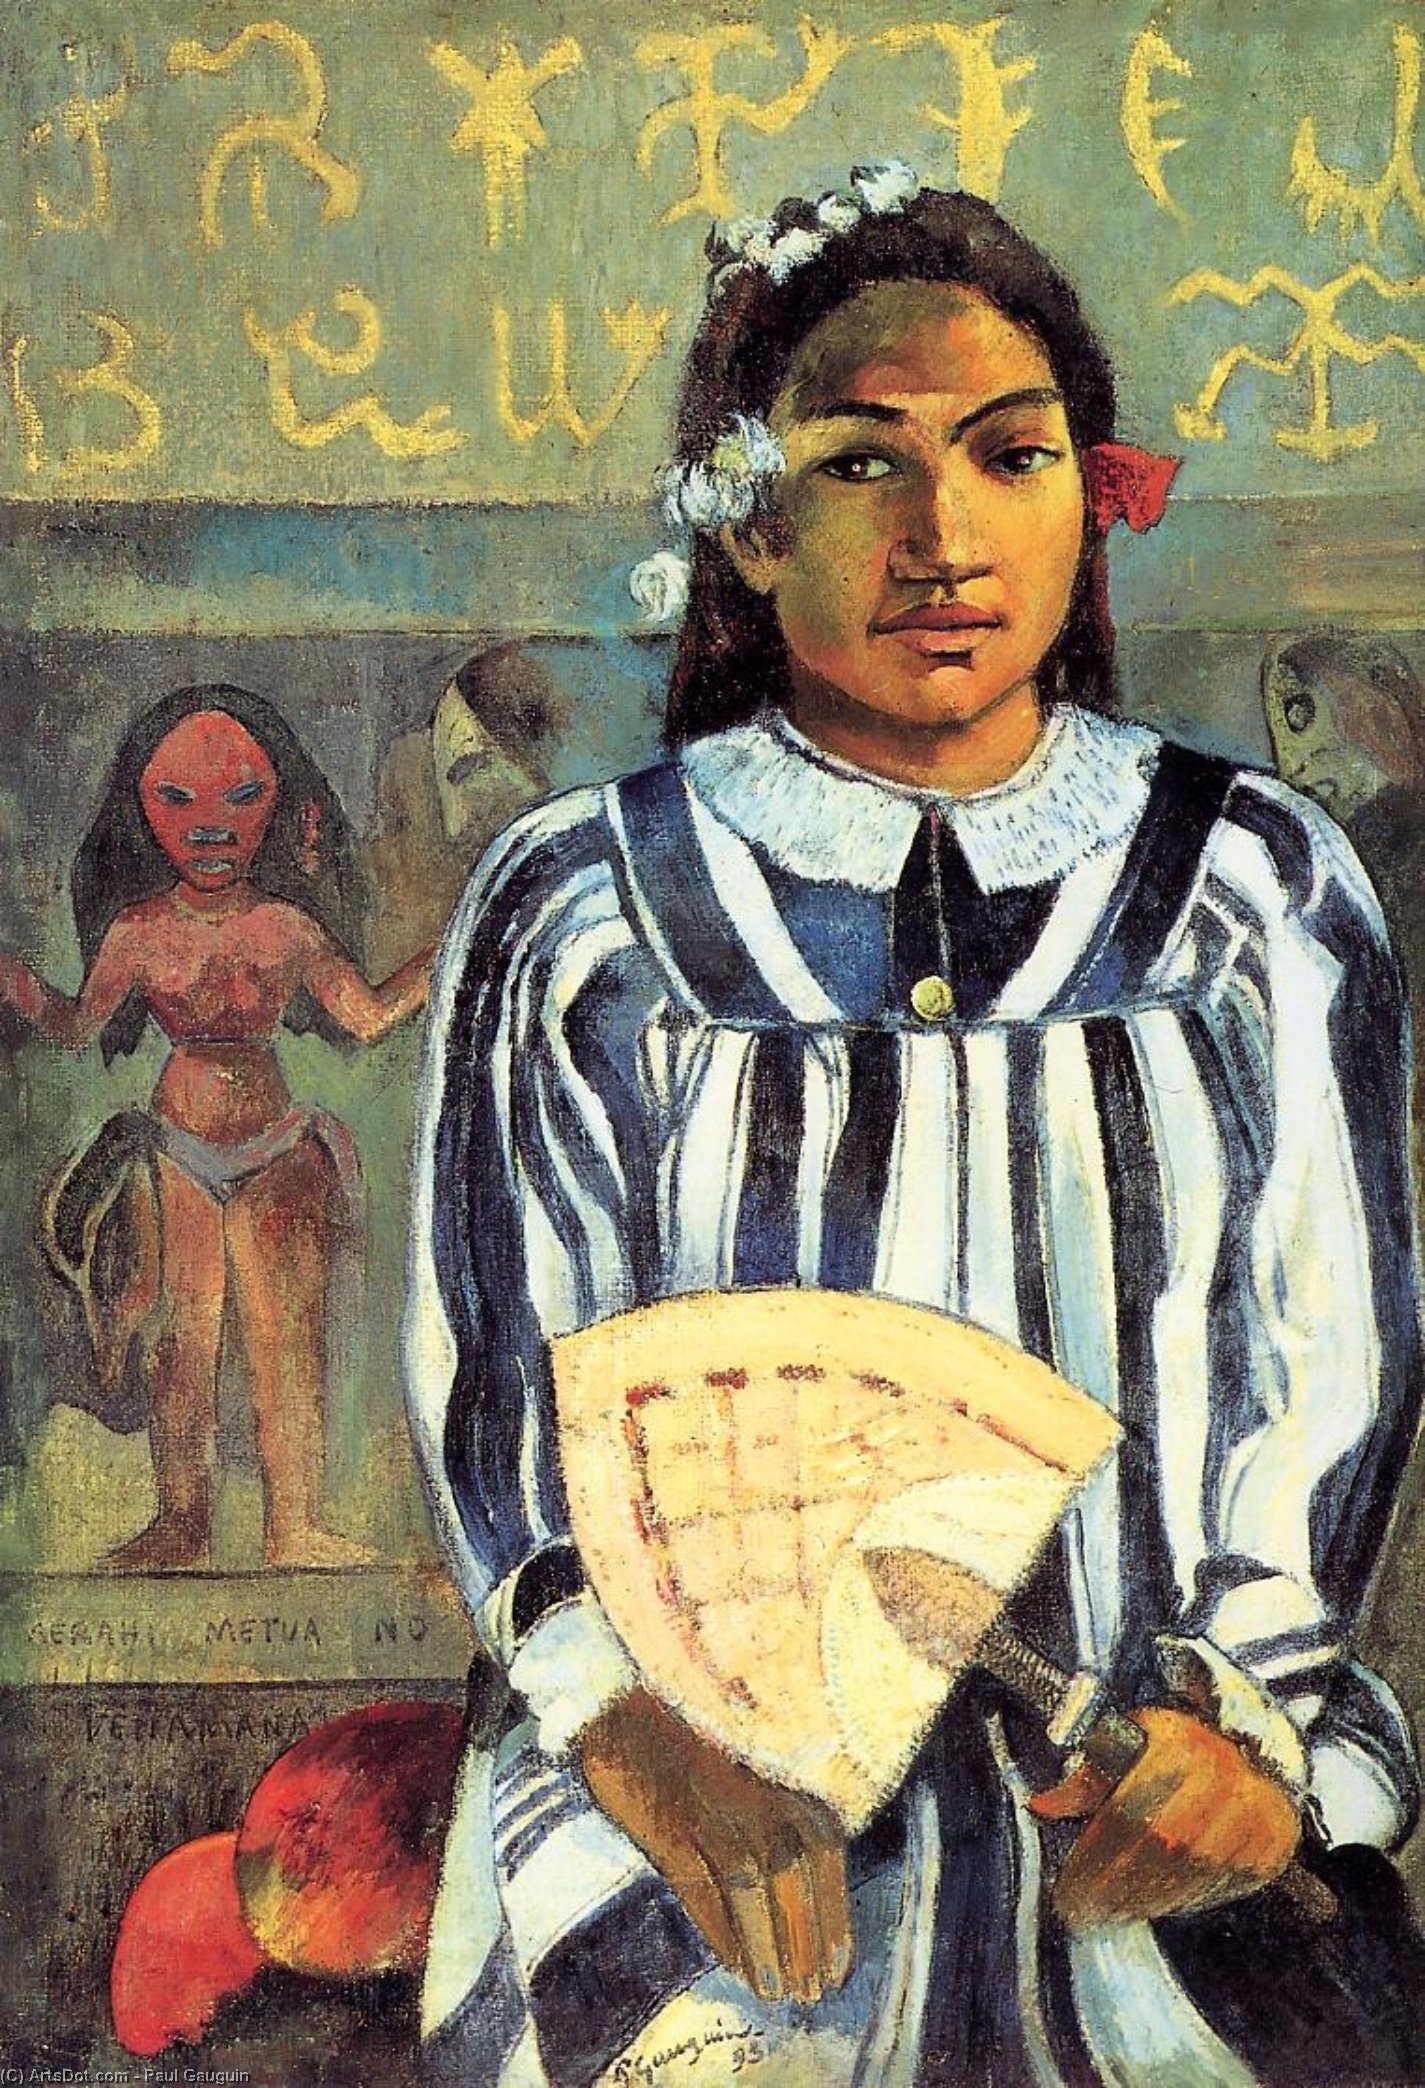 WikiOO.org - אנציקלופדיה לאמנויות יפות - ציור, יצירות אמנות Paul Gauguin - Marahi Metua no Tehamana (also known as Tehamana Has Many Ancestors)